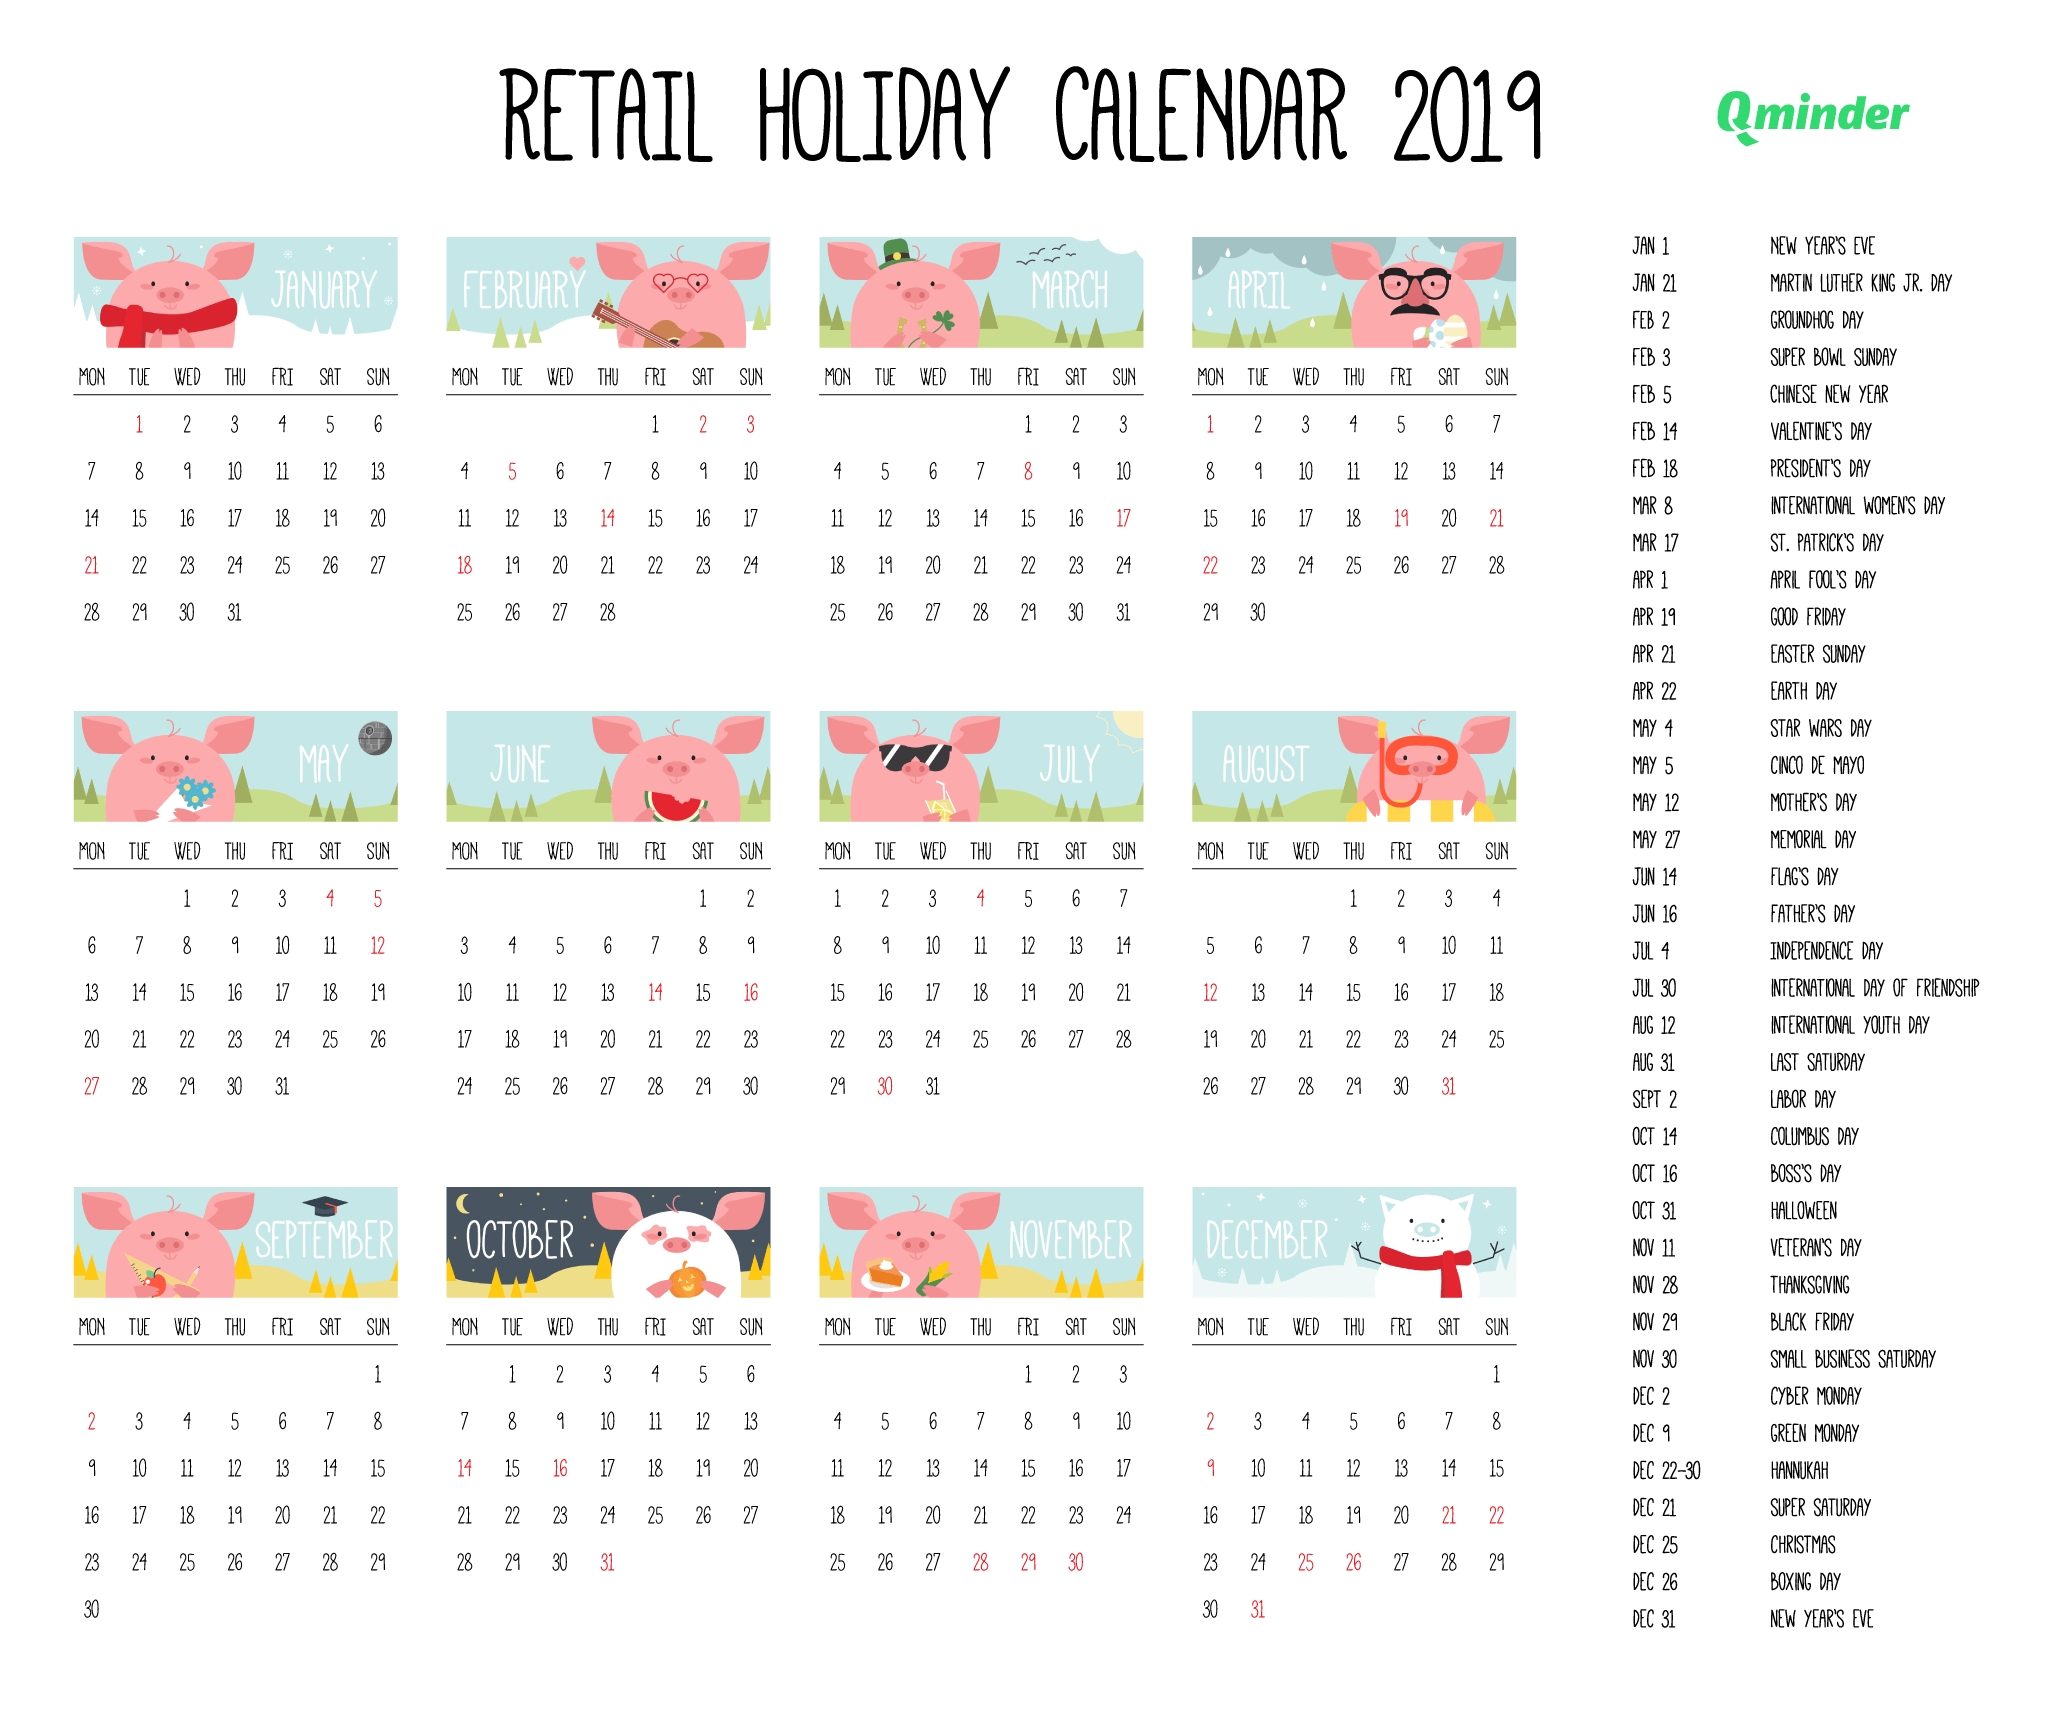 2019 Retail Holiday Calendar | Qminder-Hallmark Calendar Holidays 2020